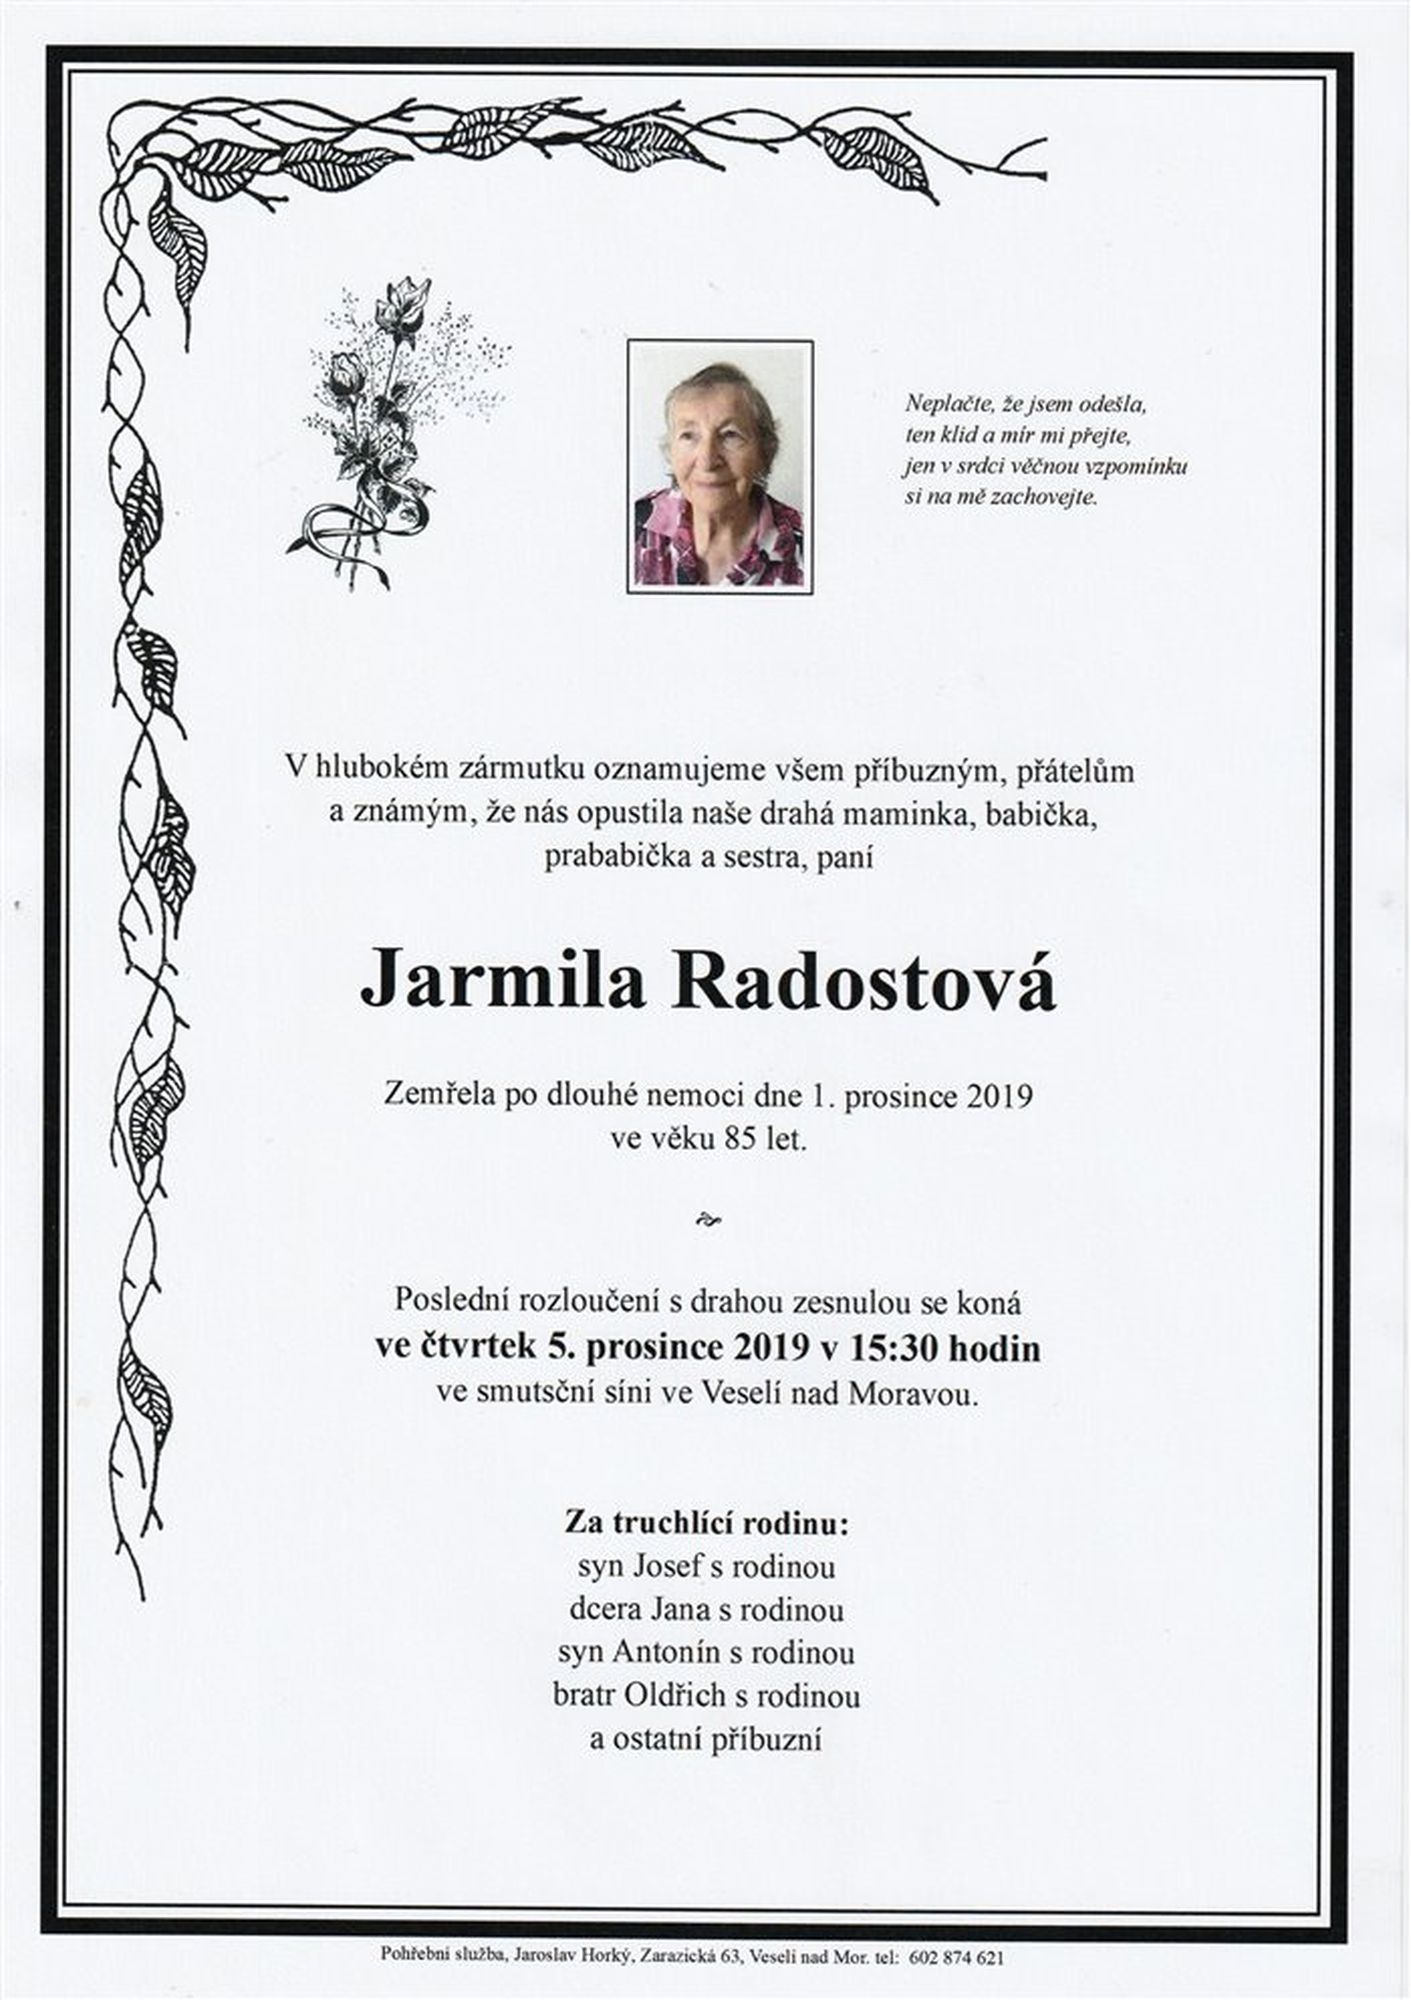 Jarmila Radostová